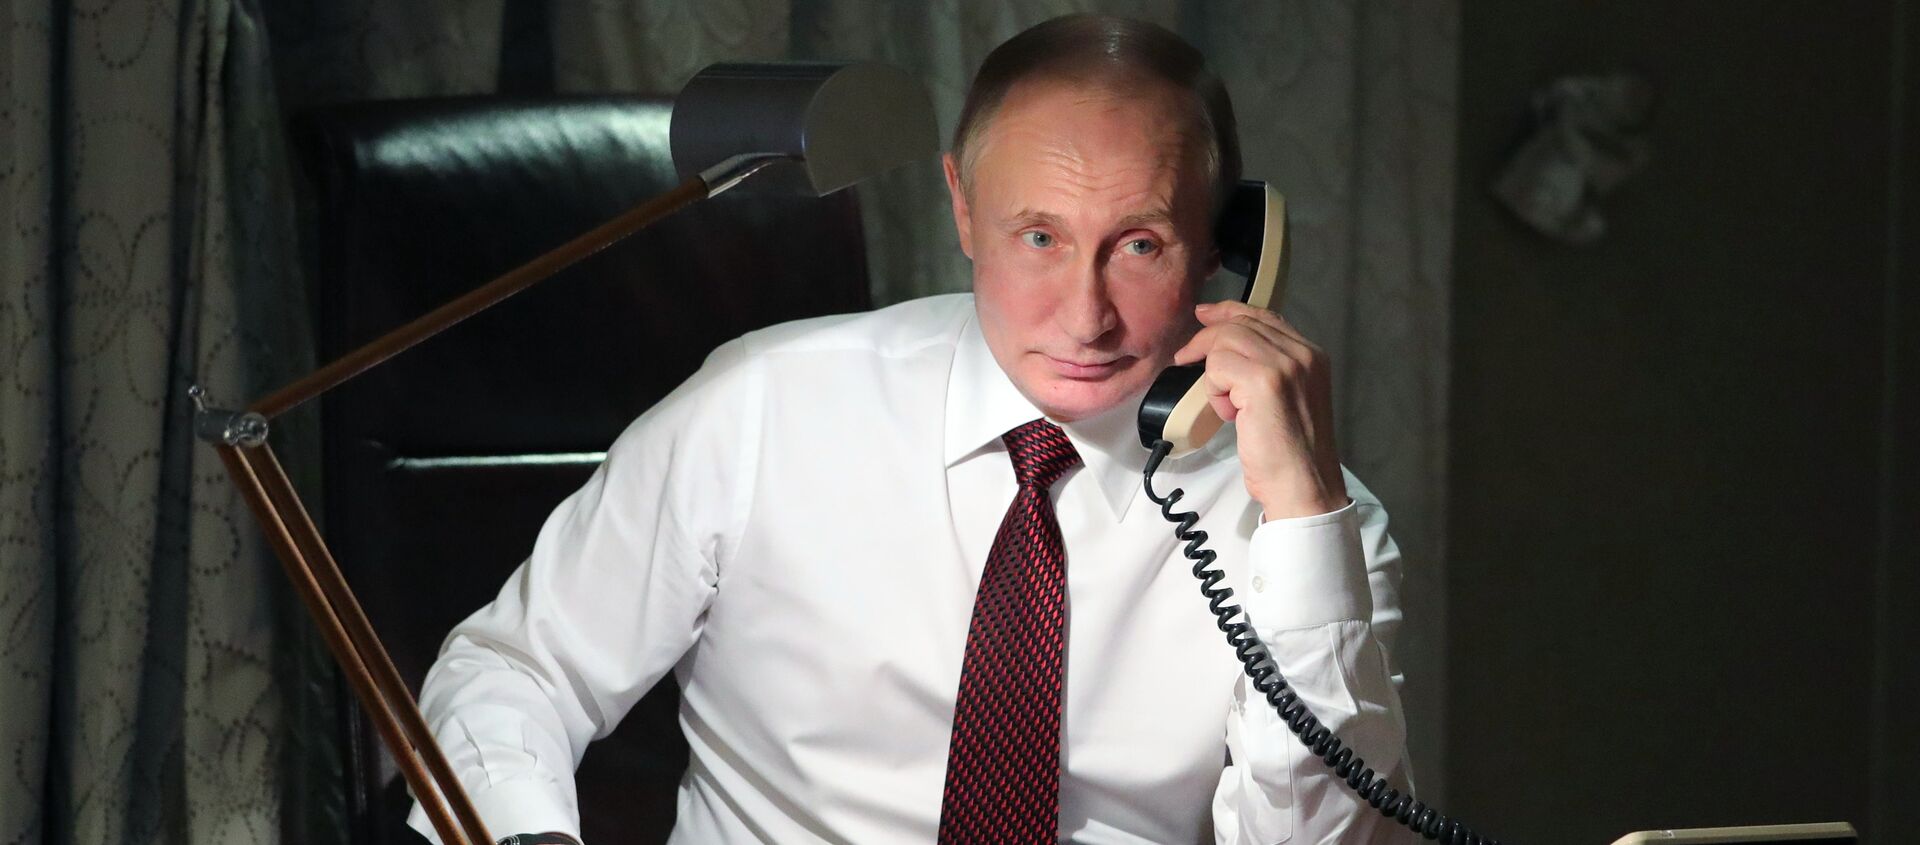 Vladímir Putin, presidente de Rusia, al teléfono - Sputnik Mundo, 1920, 12.12.2018